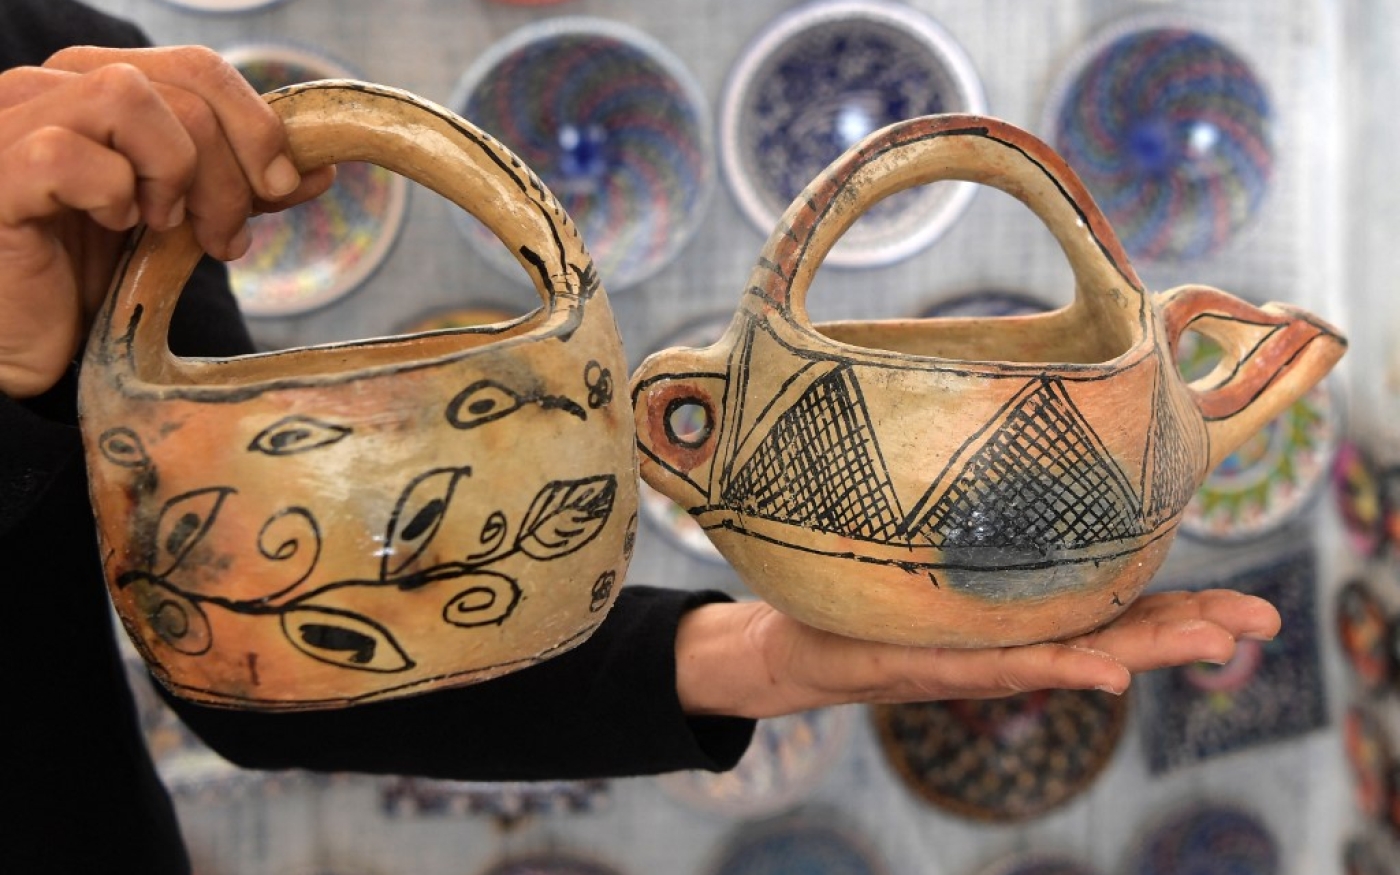 Les poteries arborent des points, des lignes et une texture originale qui rappellent l’art du tatouage et du tissage (AFP/Fethi Belaïd)